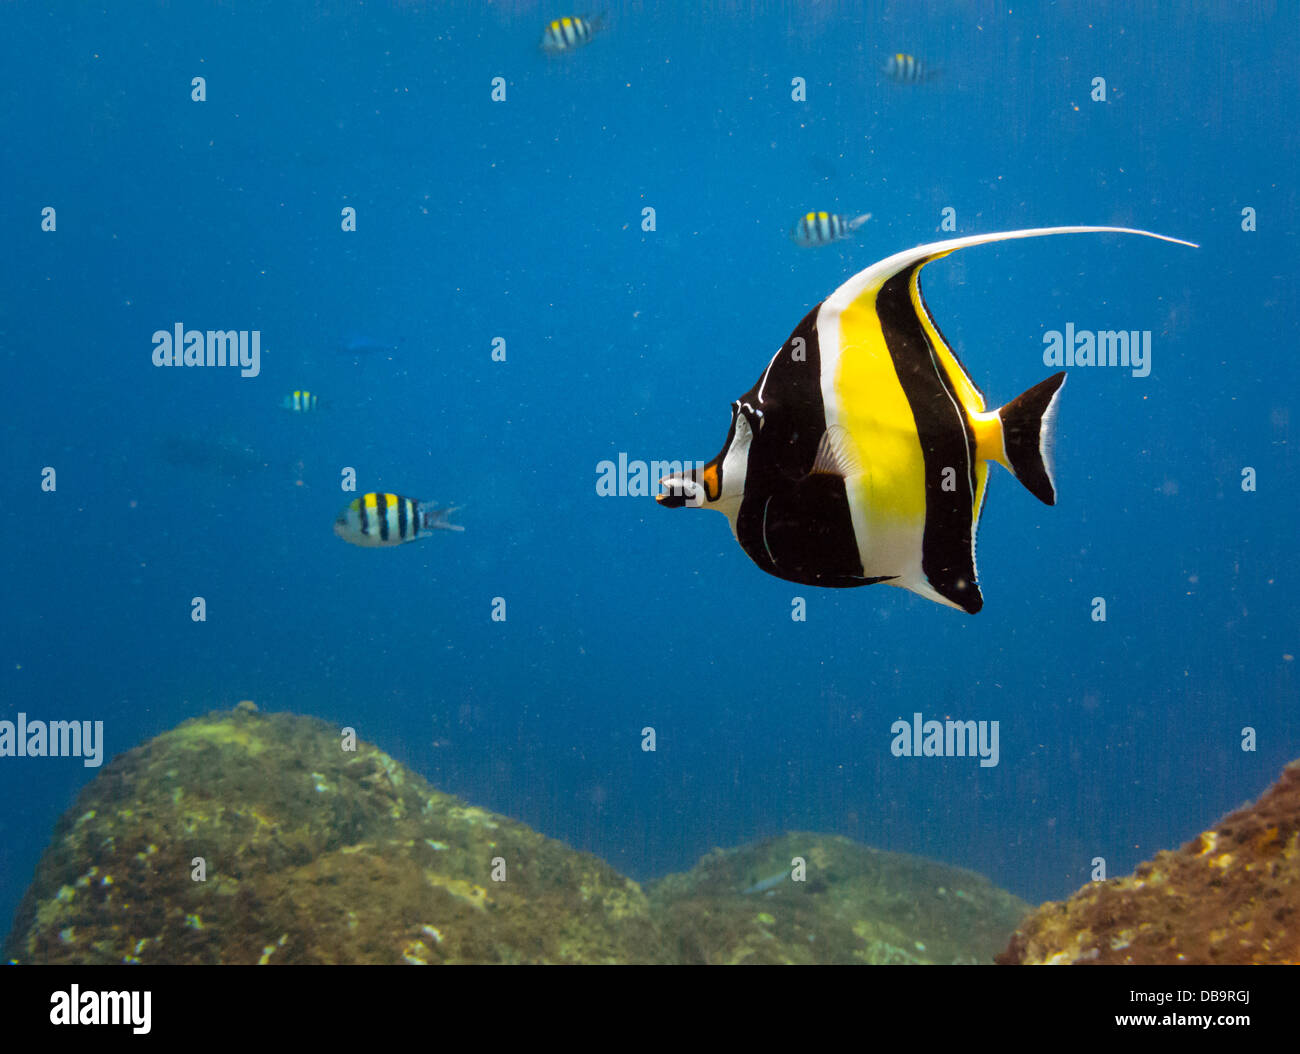 Close-up de amarillo brillante, negro con rayas blancas, peces tropicales nadar en Castle Rock arrecifes de coral en Indonesia, Asia Foto de stock